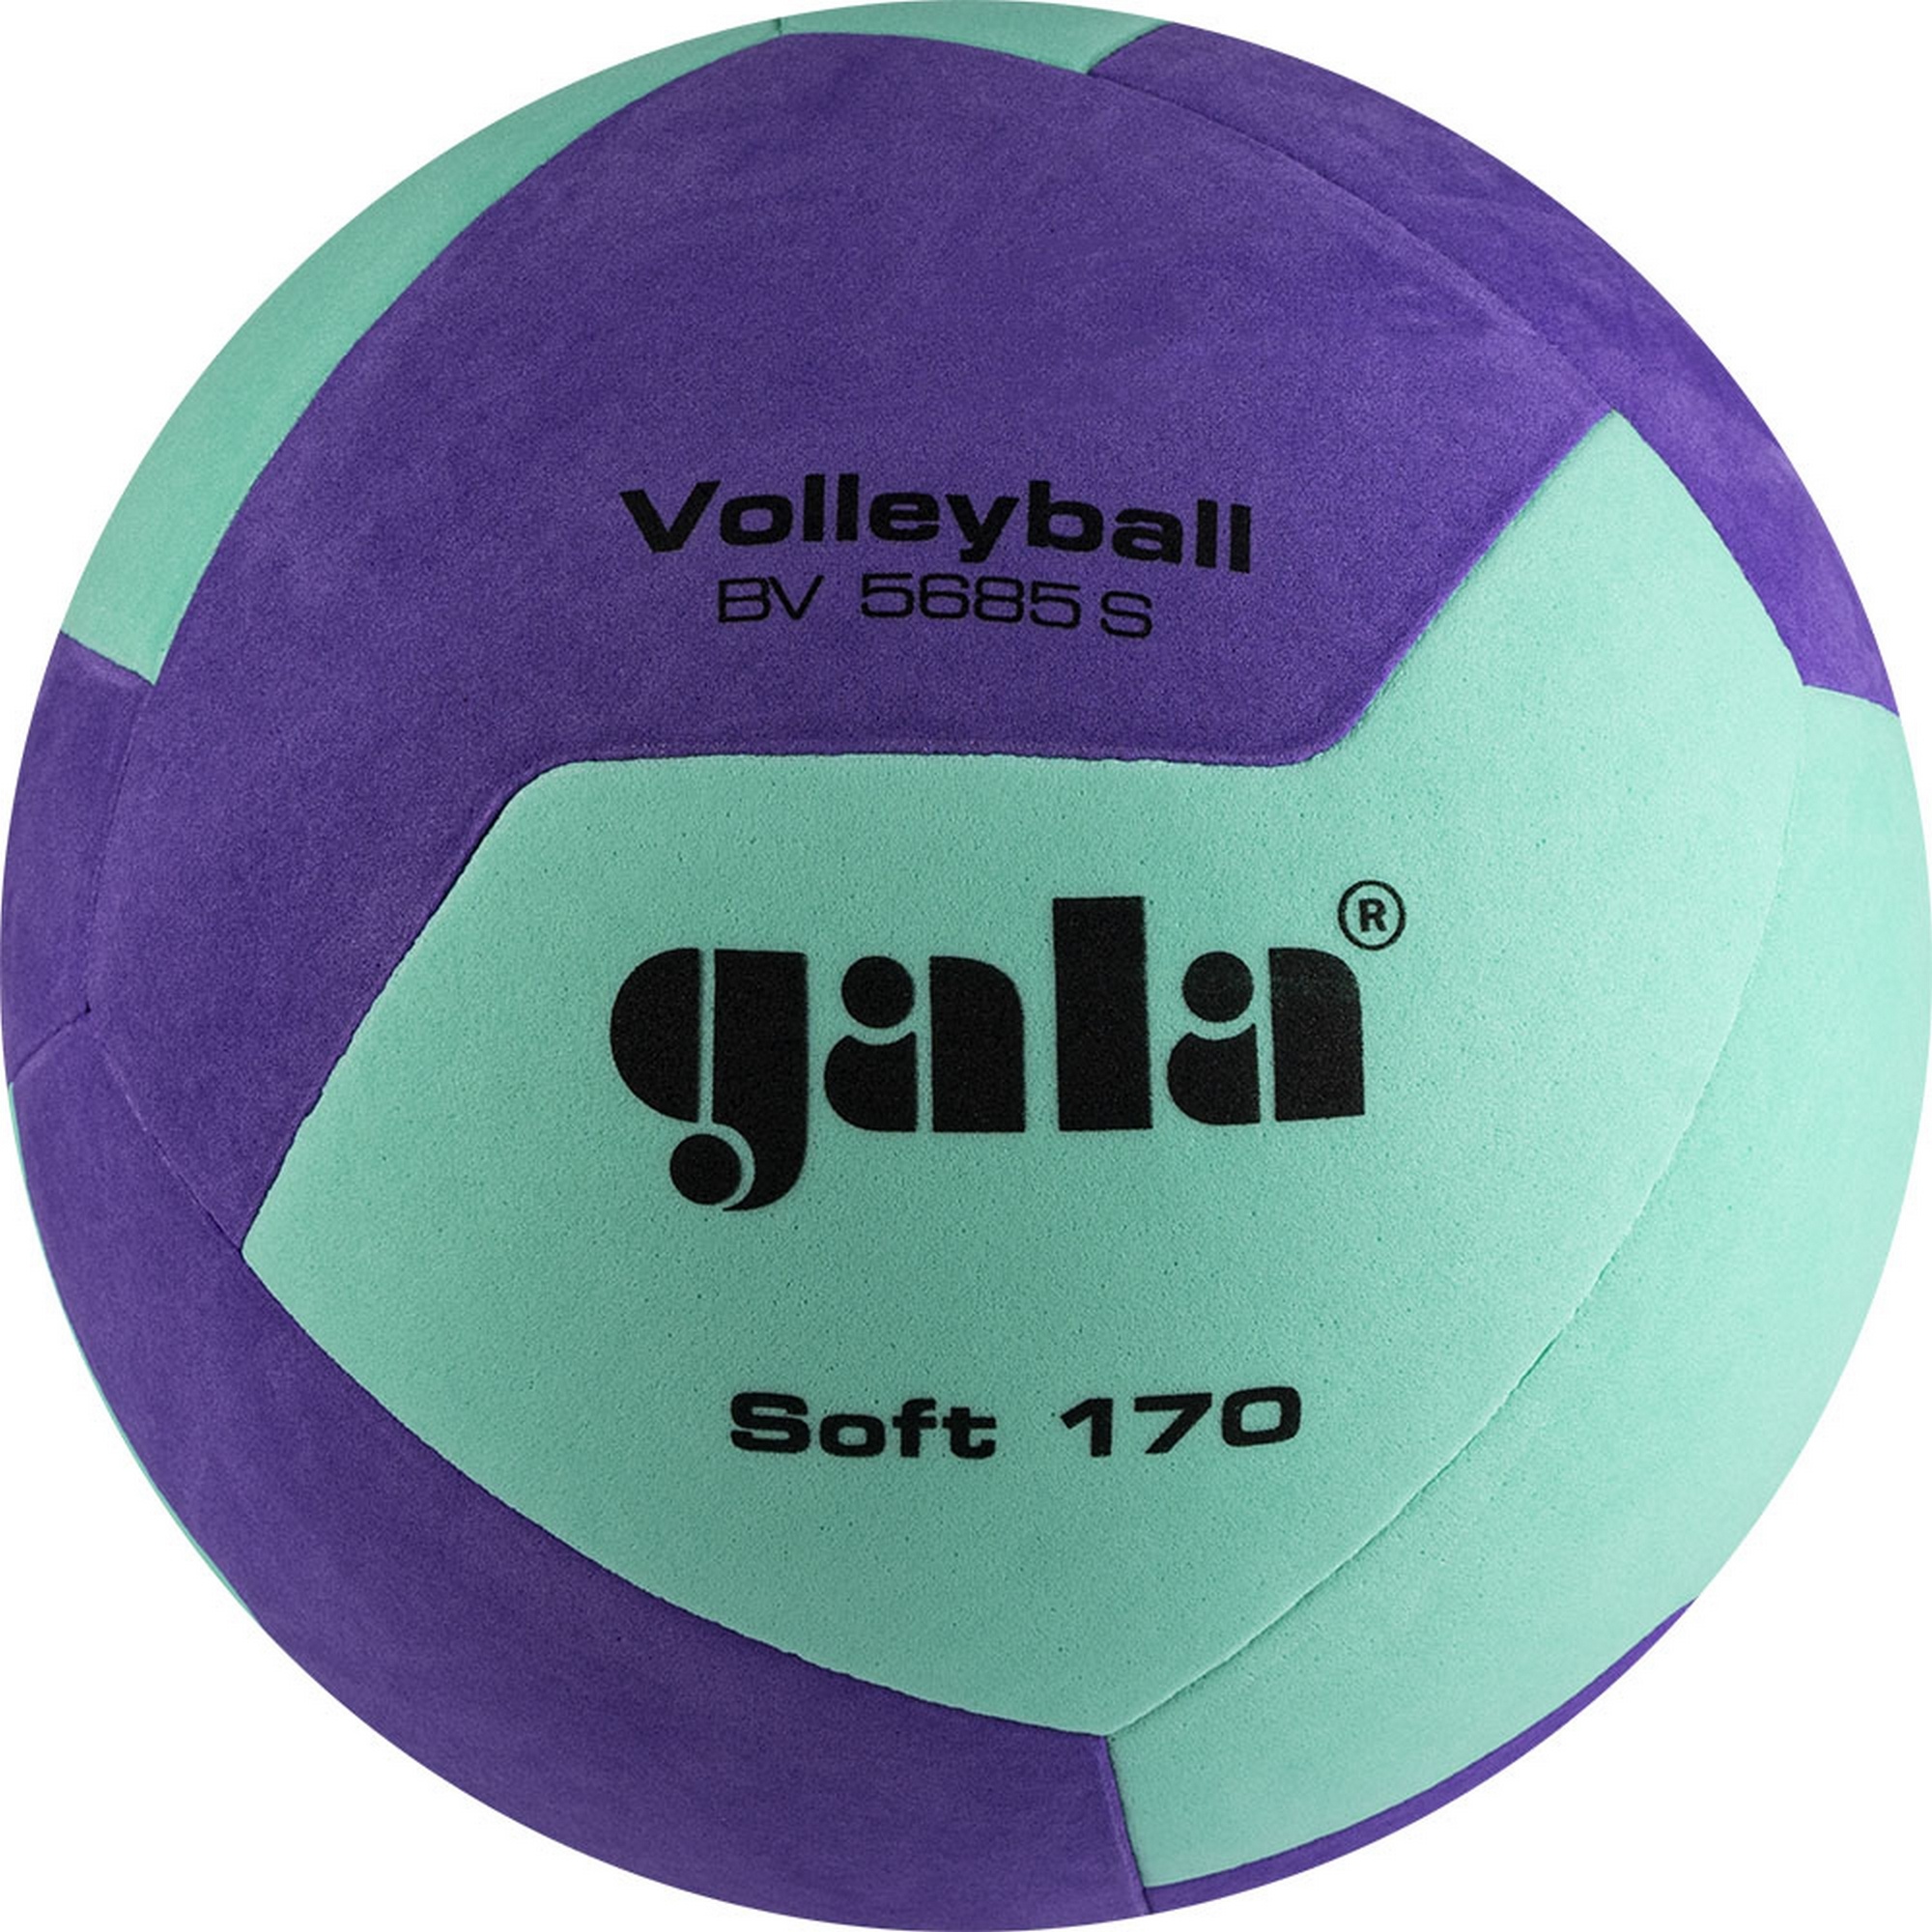   Gala Soft 170, 12 BV5685SCF .5